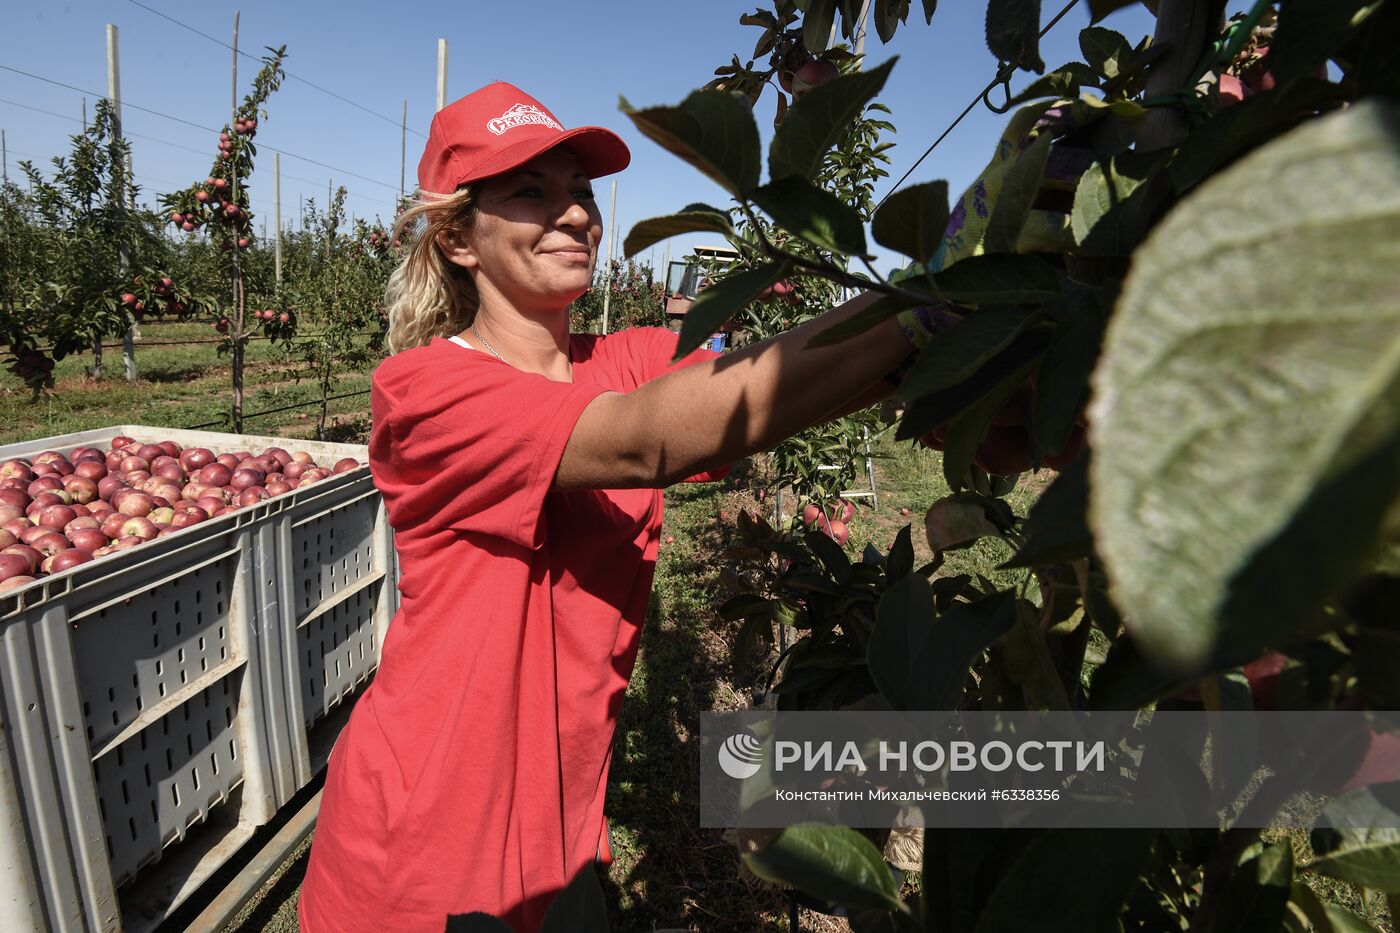 Сбор урожая яблок в Крыму